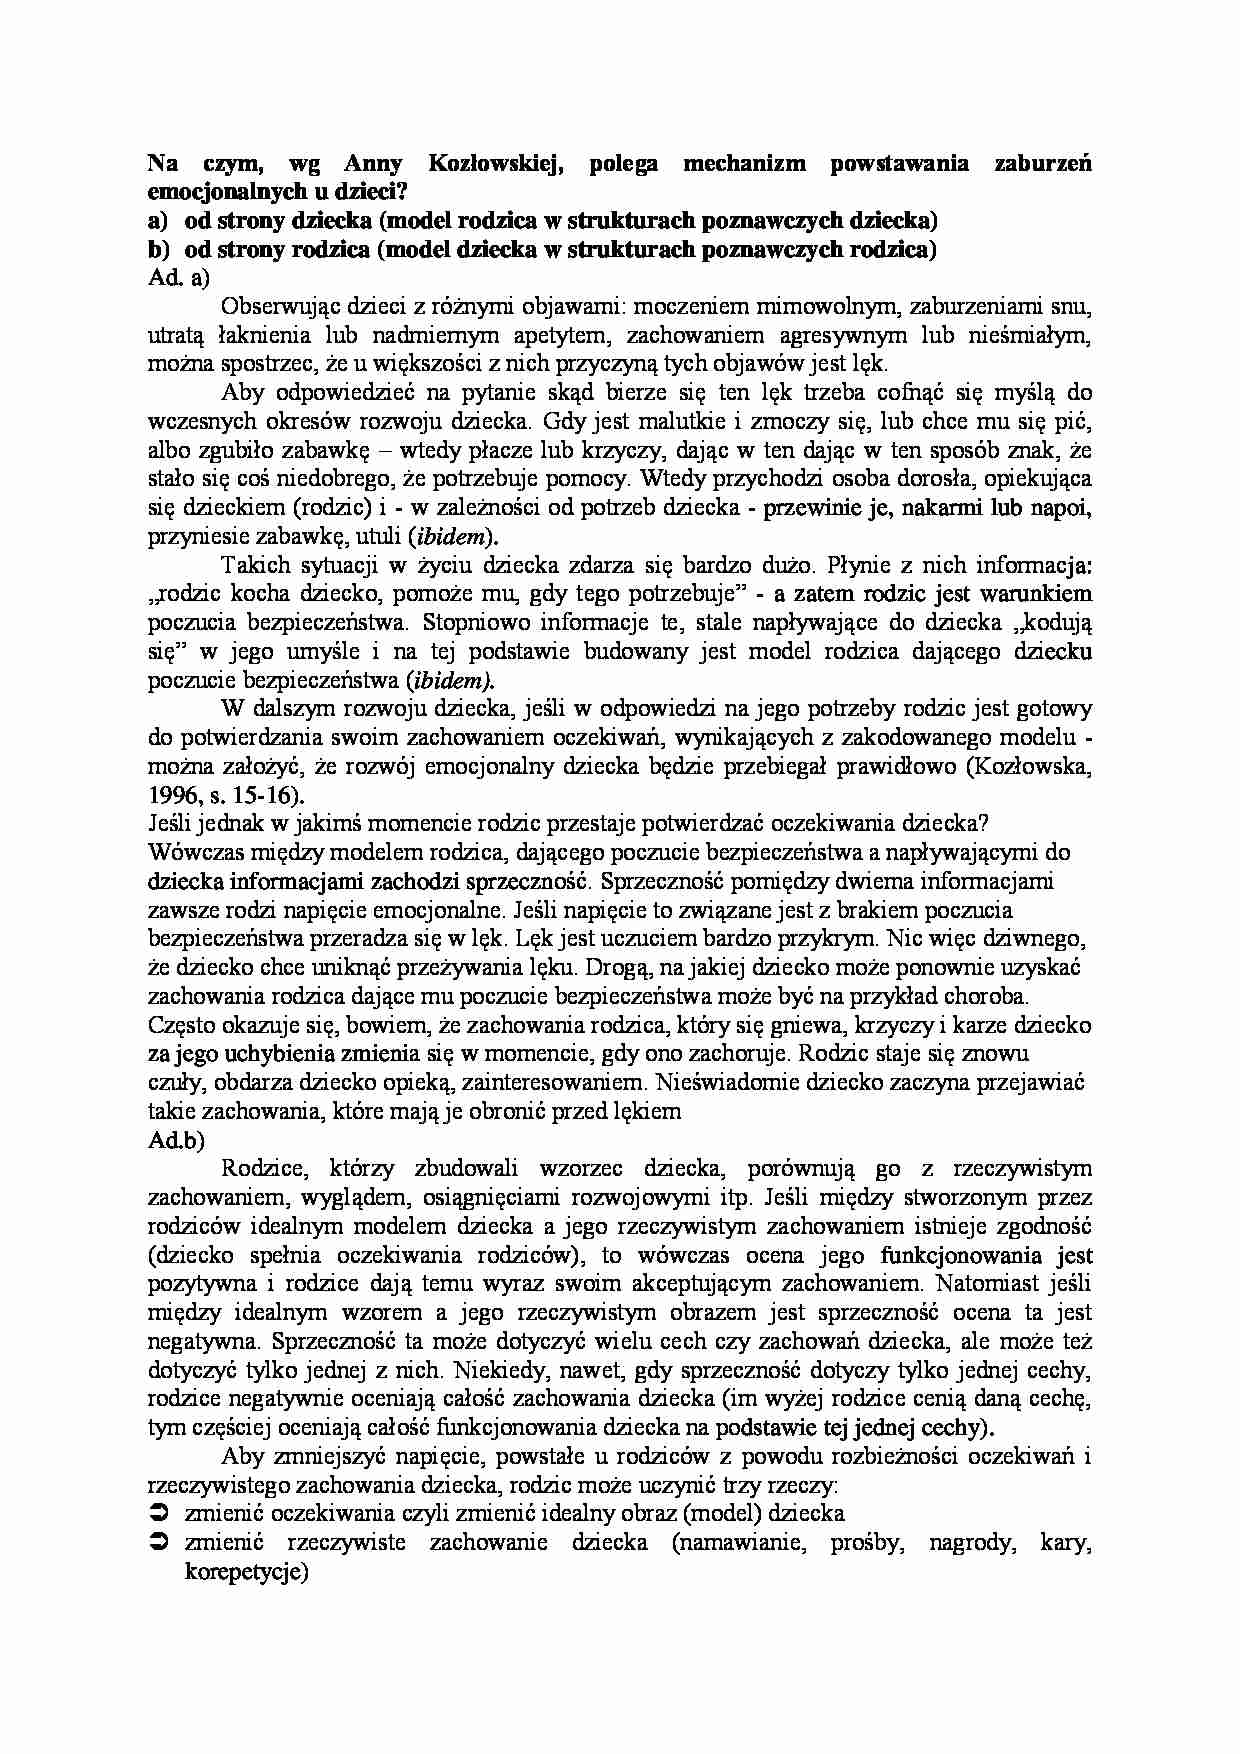 Mechanizm powstawania zaburzeń emocjonalnych u dziecii wg Anny Kozłowskiej - strona 1